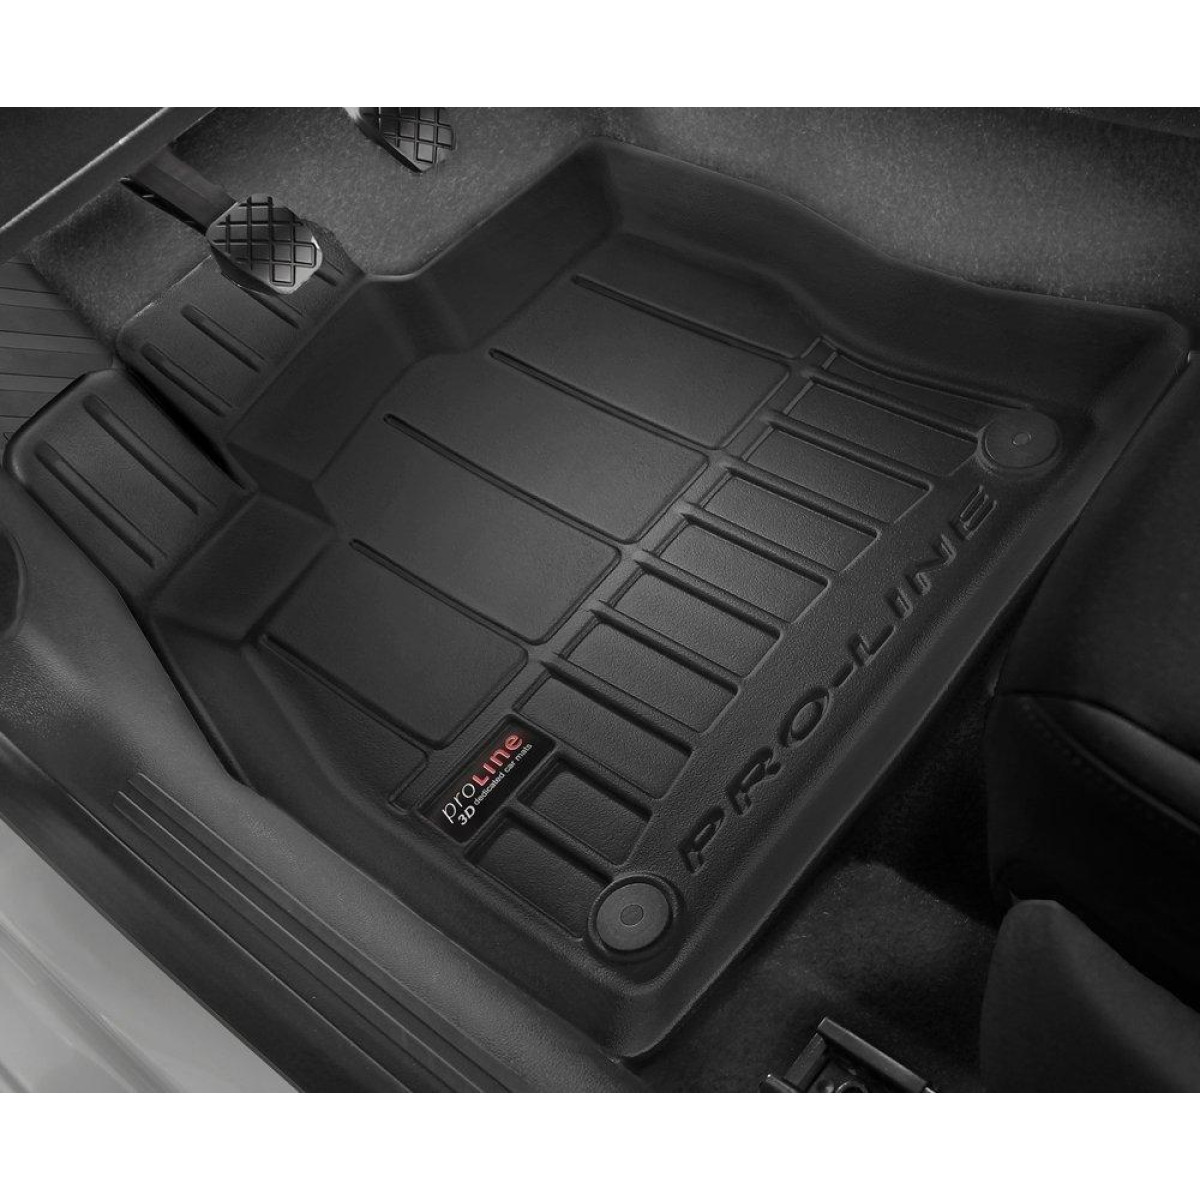 Guminiai kilimėliai Proline Citroen DS7 Crossback Hybrid nuo 2019m. / paaukštintais kraštais